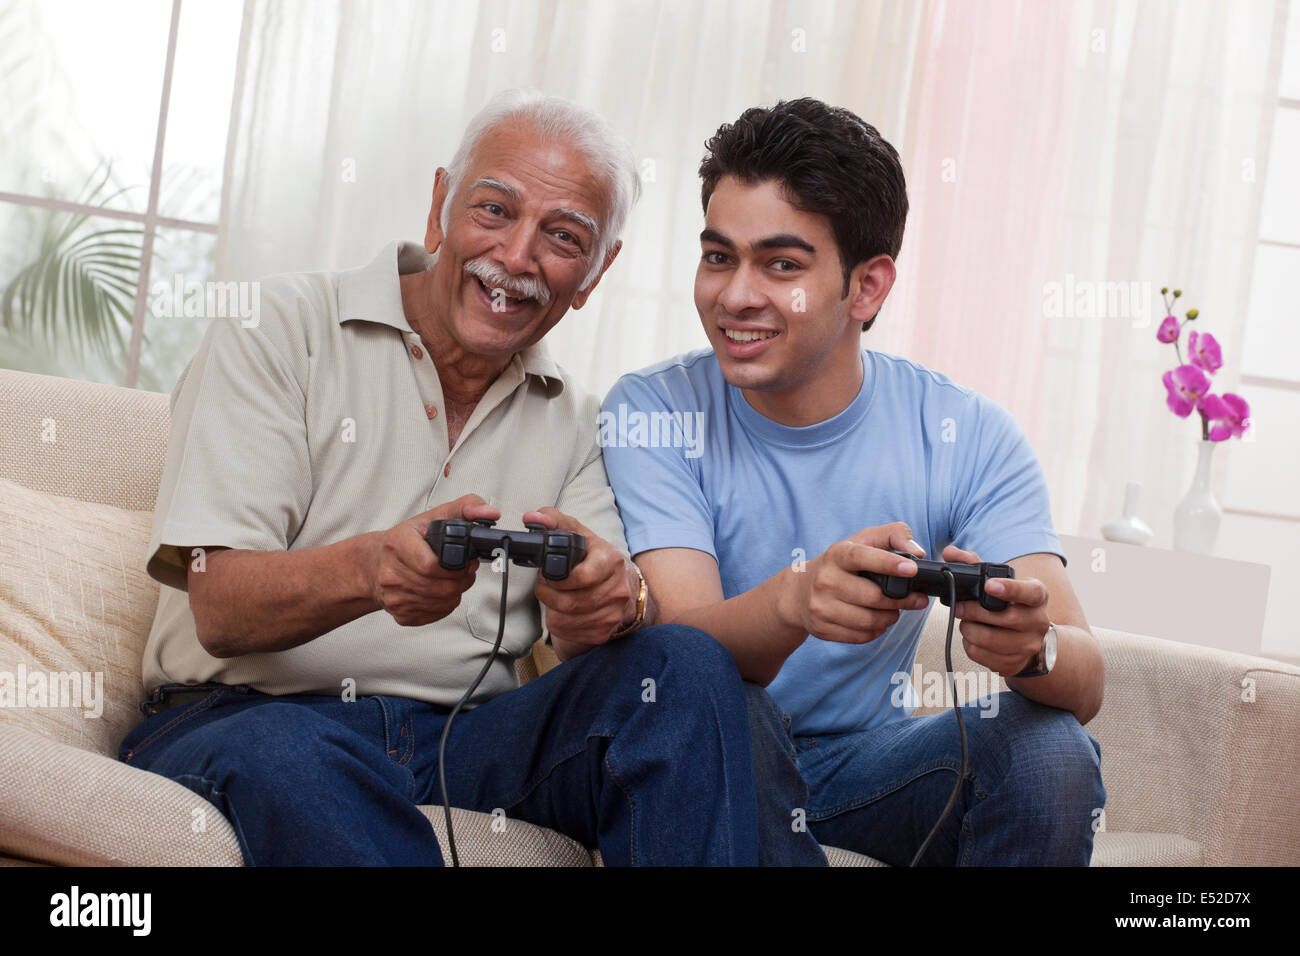 Grand-père et petit-fils playing video game Banque D'Images